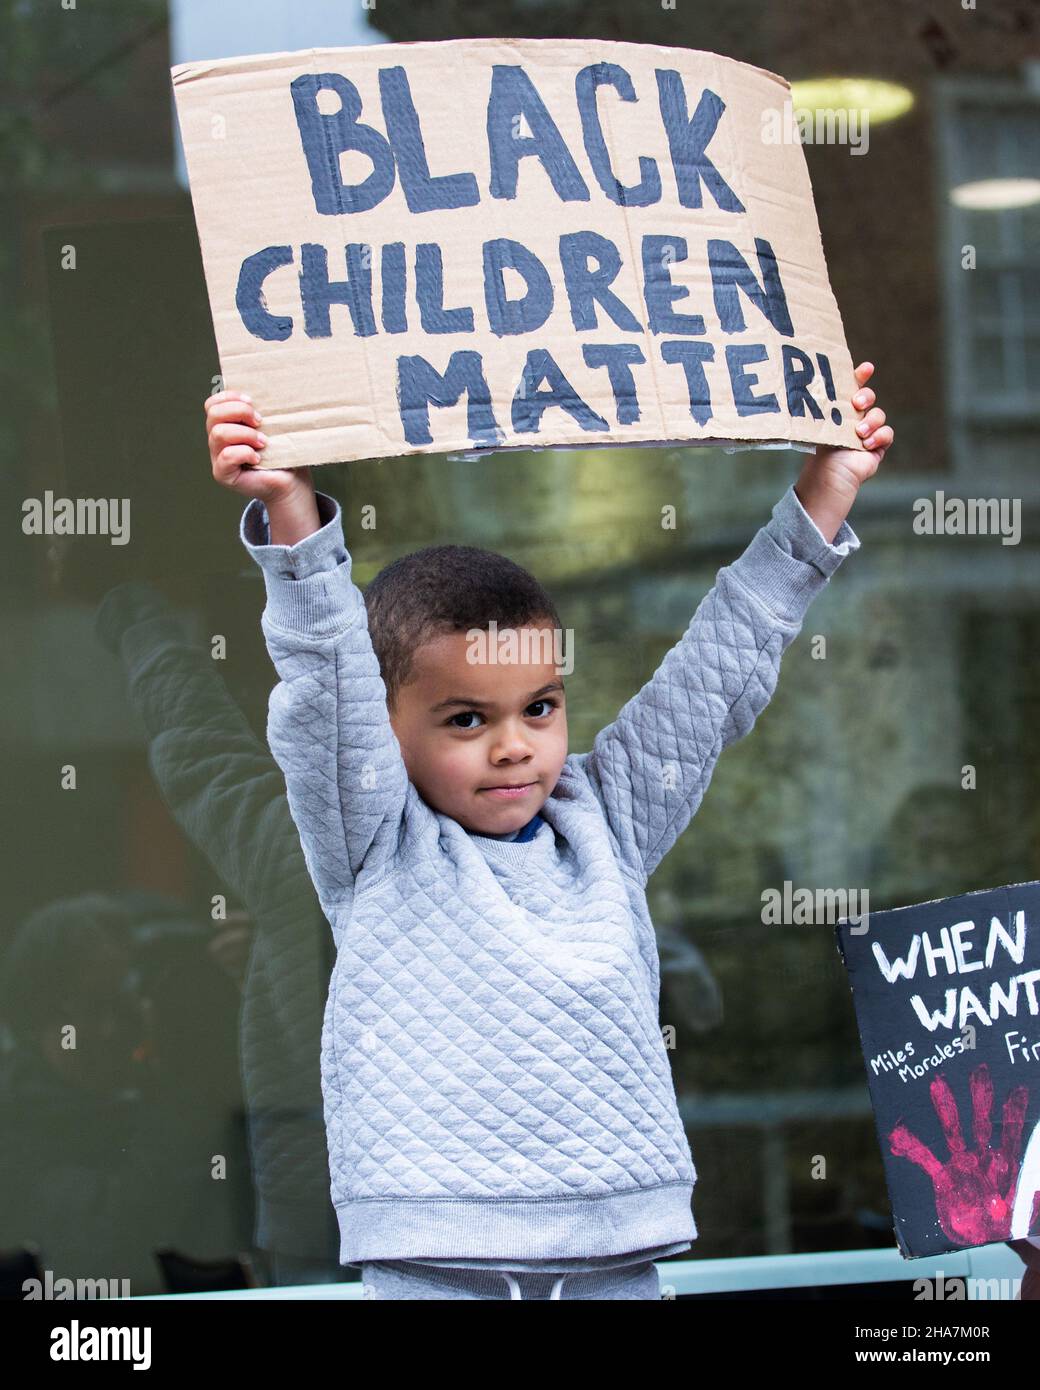 BLM enfant protstor tenant noir enfants matière étiquette Londres 2020 Banque D'Images